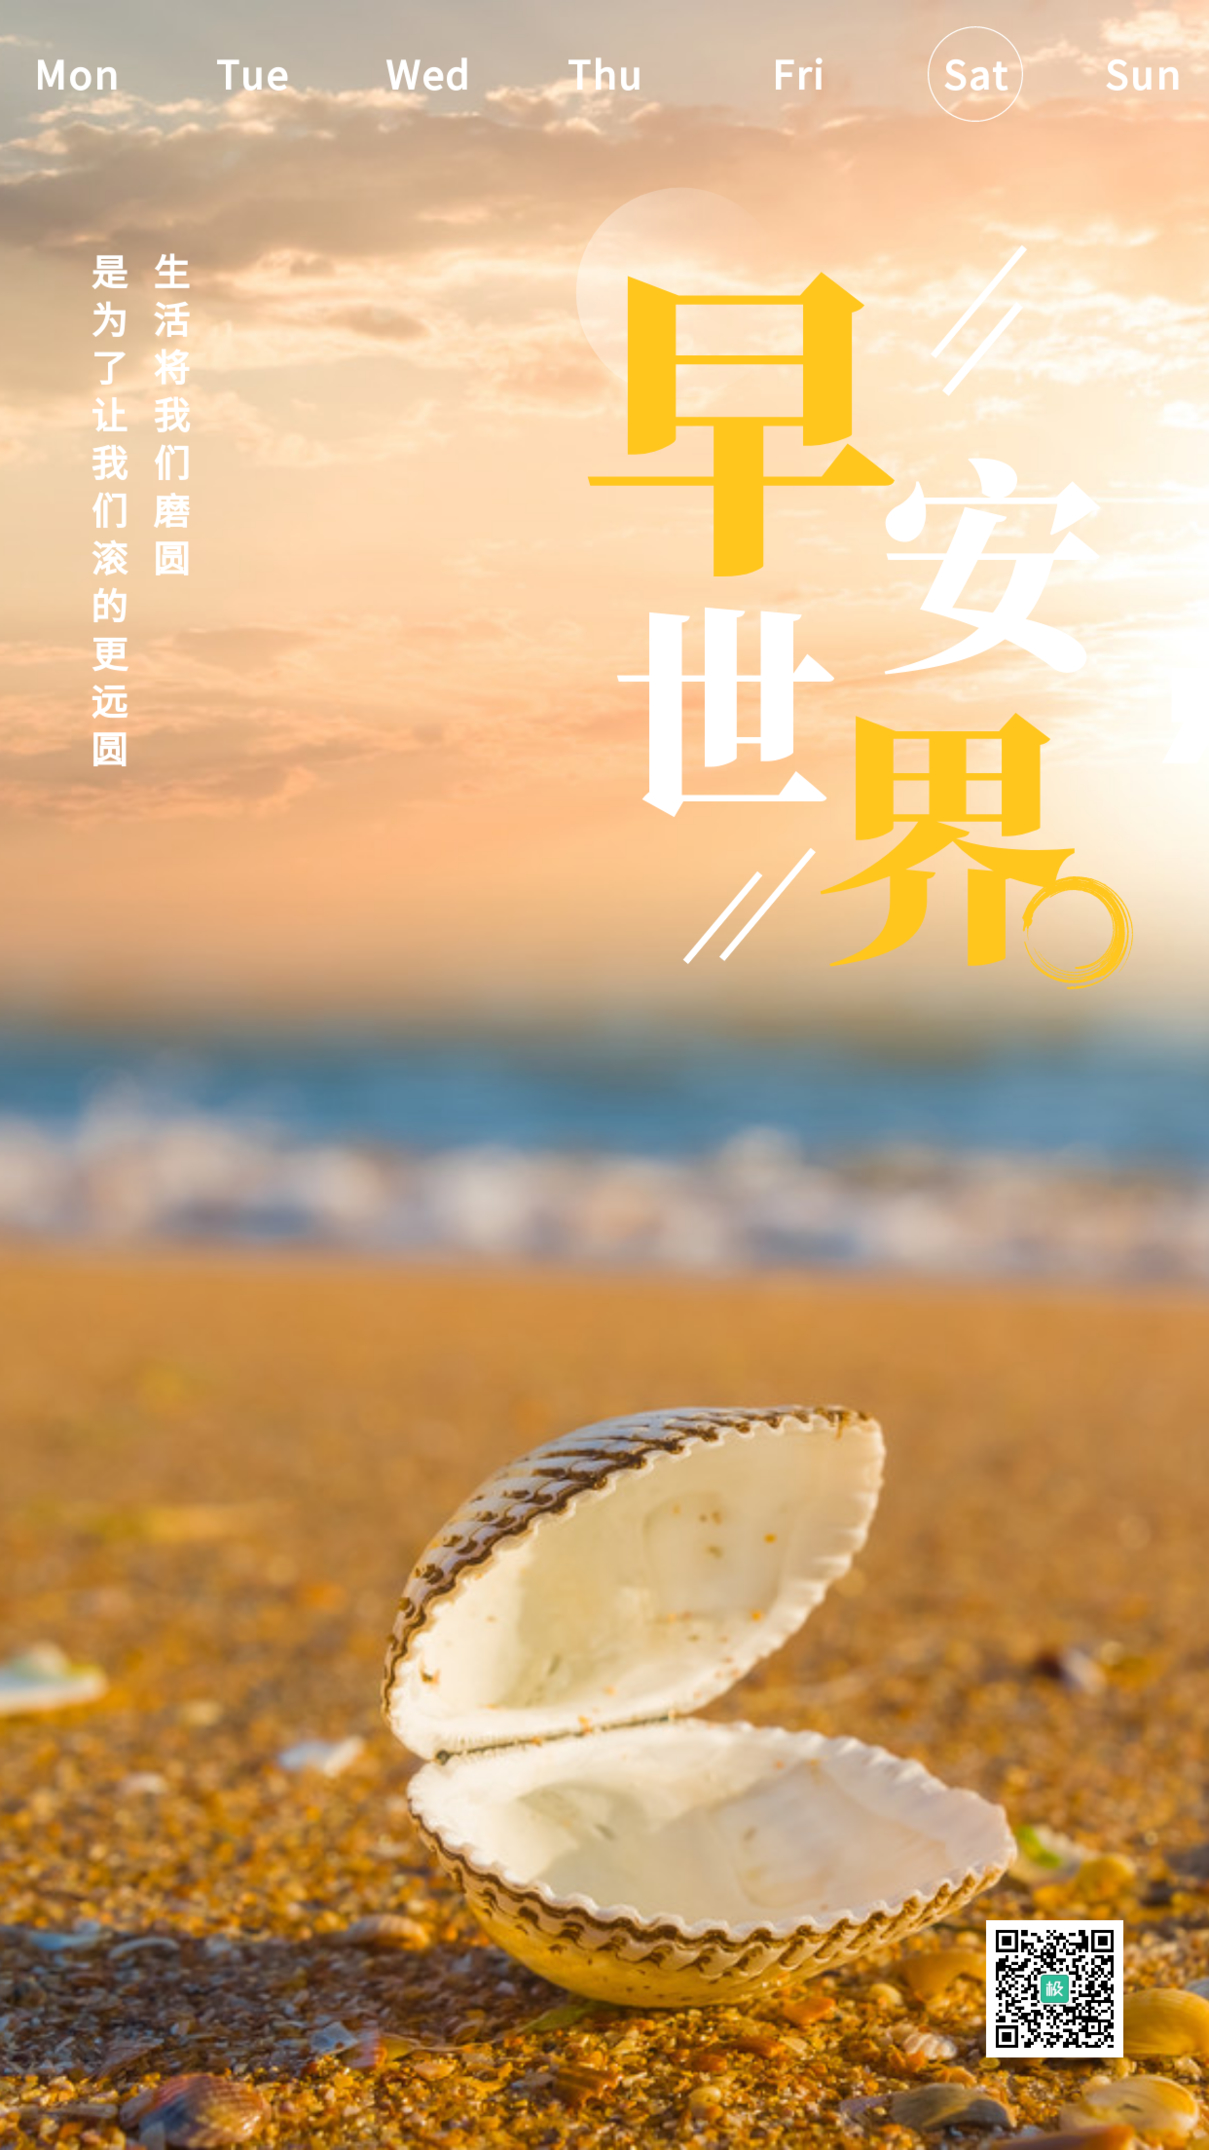 早安世界摄影简约创意海螺海洋沙滩日签海报